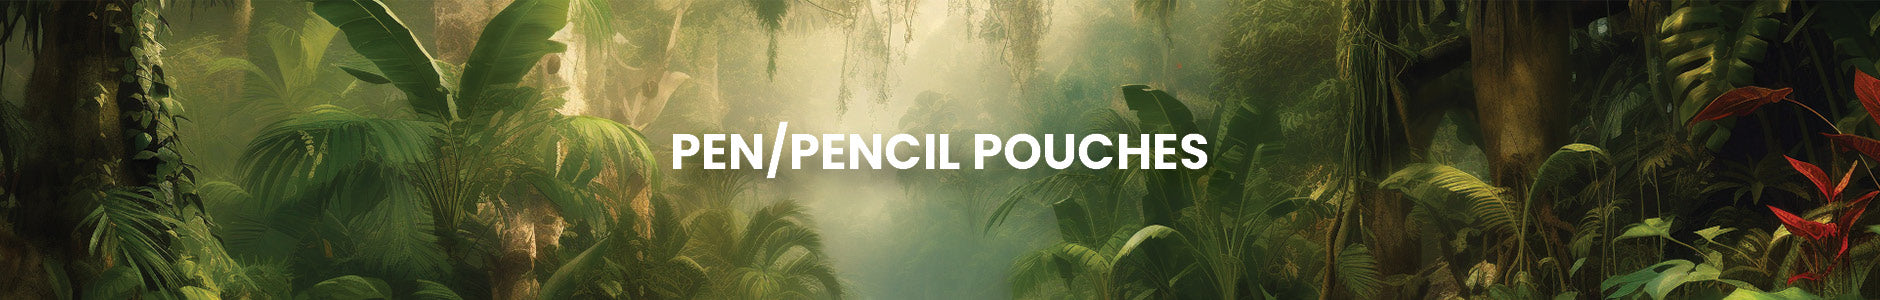 Pen/Pencil Pouches